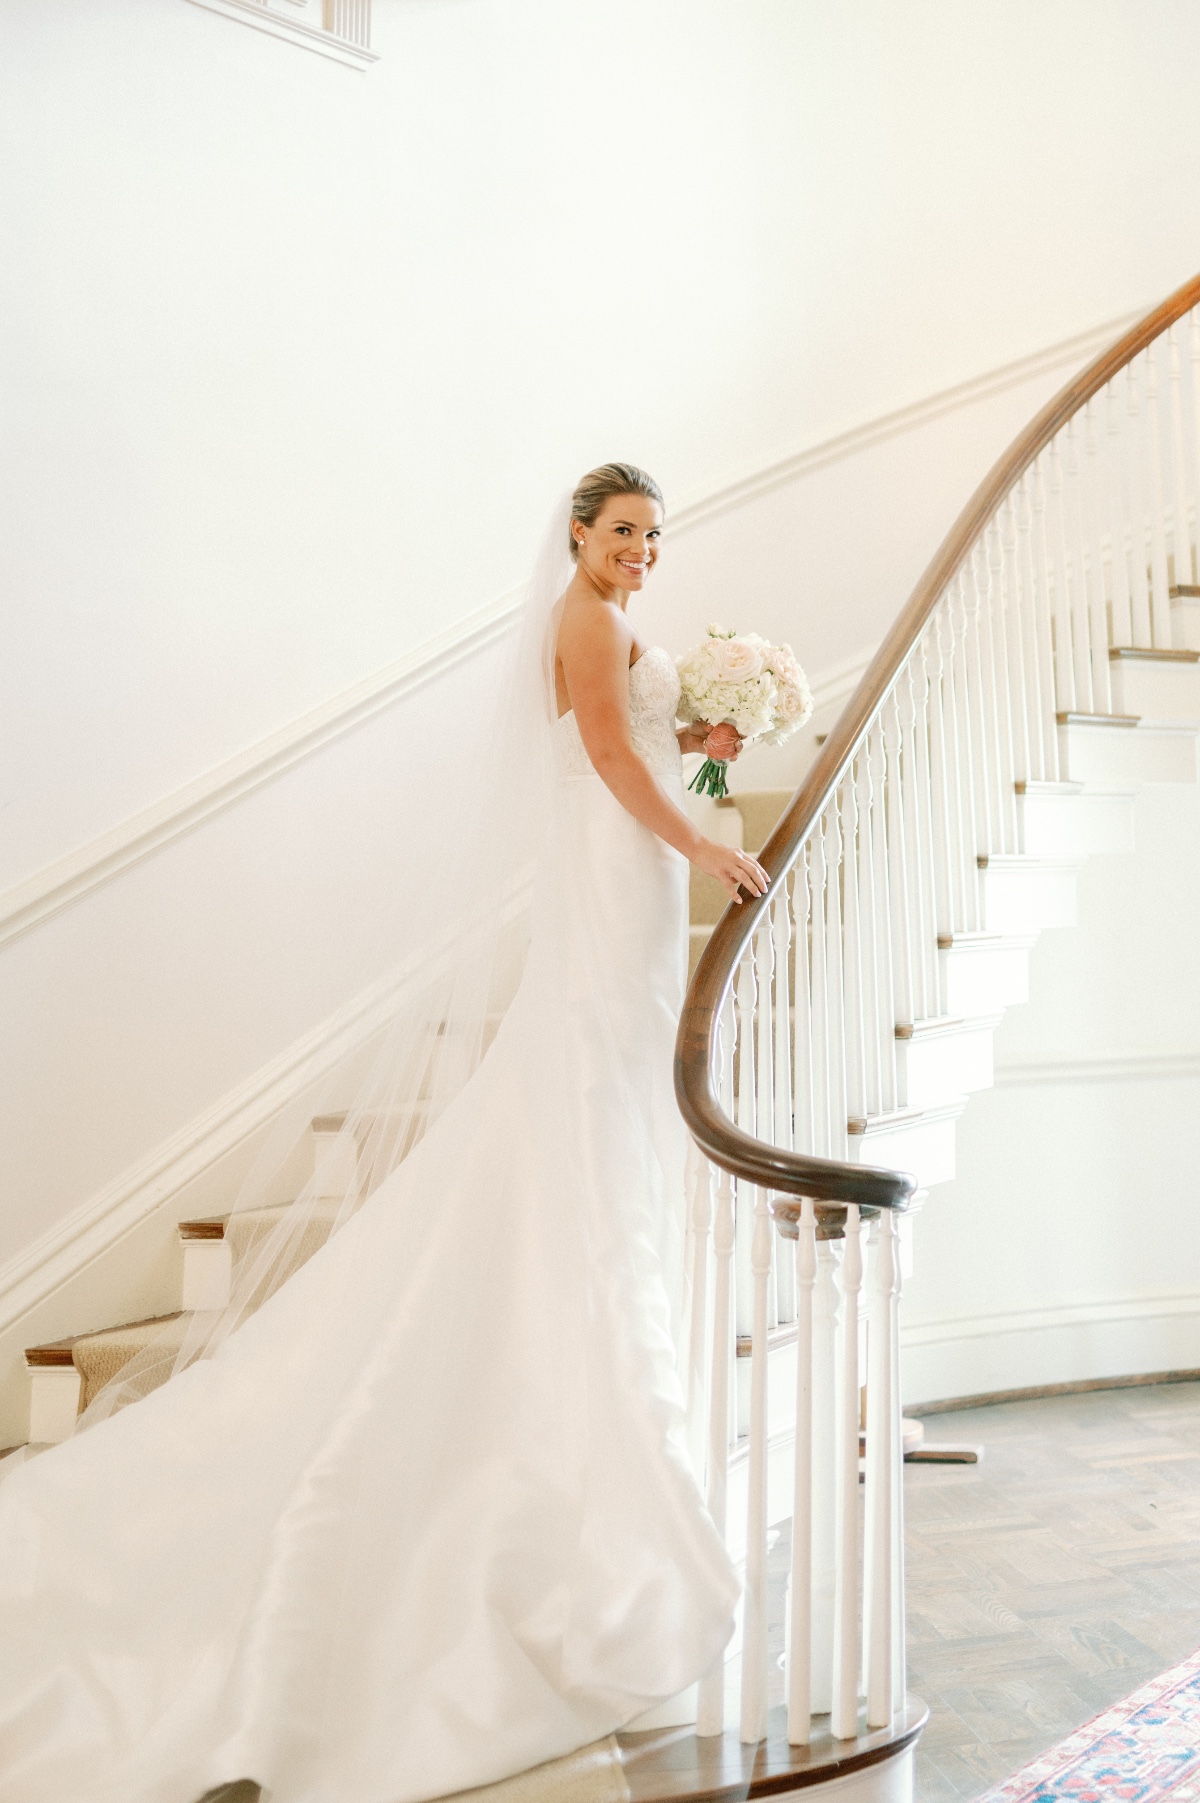 Elegant bride walking up stairwell